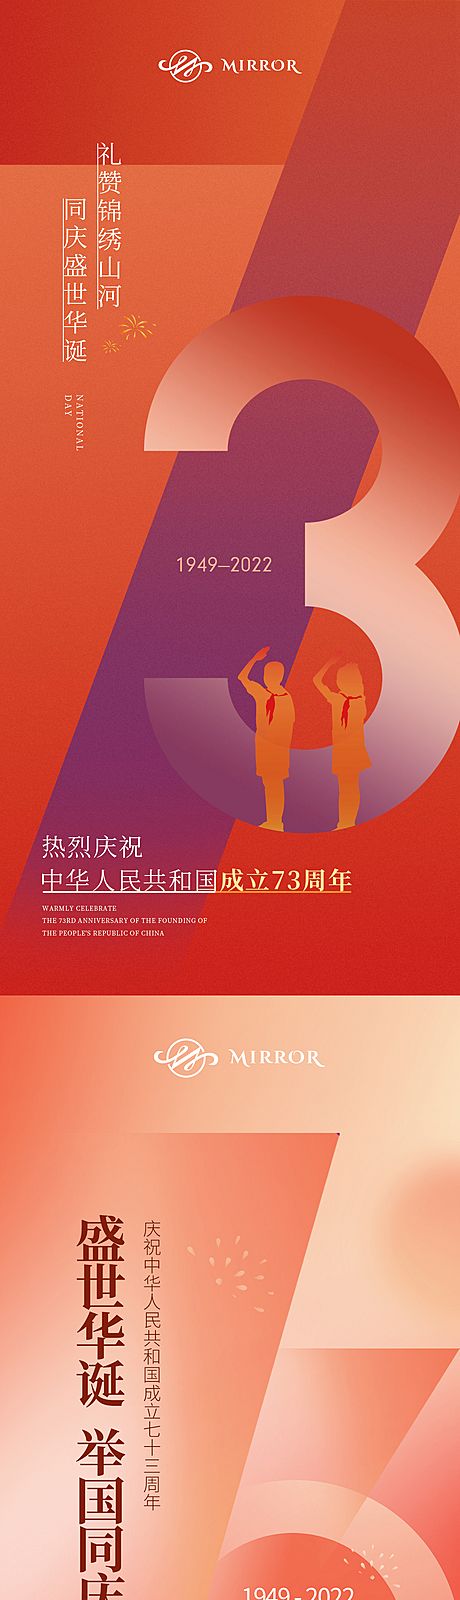 仙图网-国庆节海报